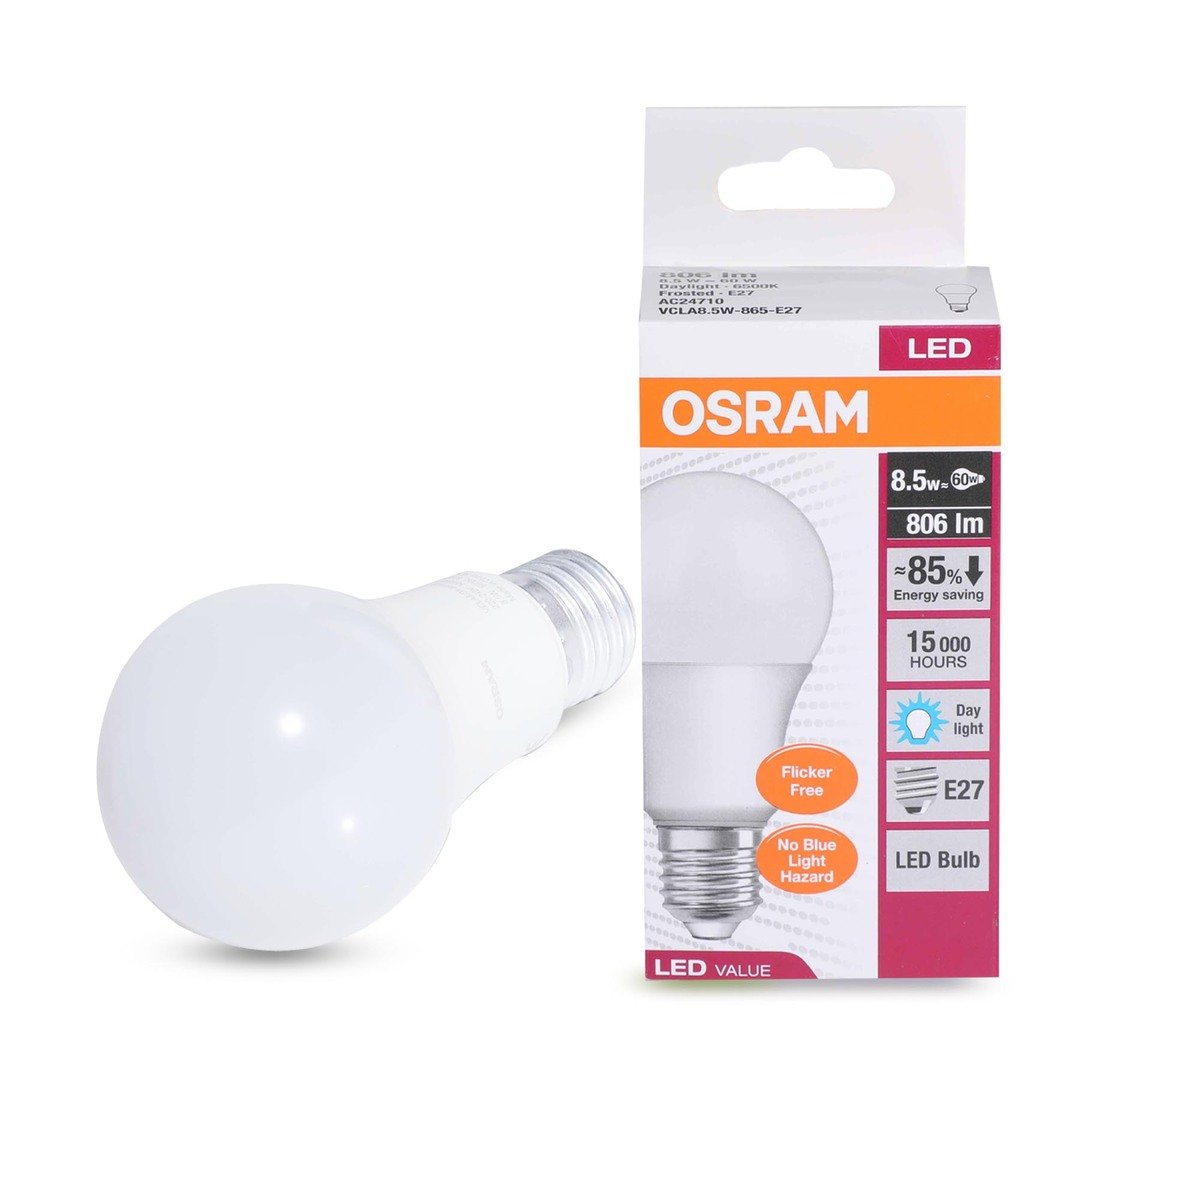 Osram Digital Lighting KSA